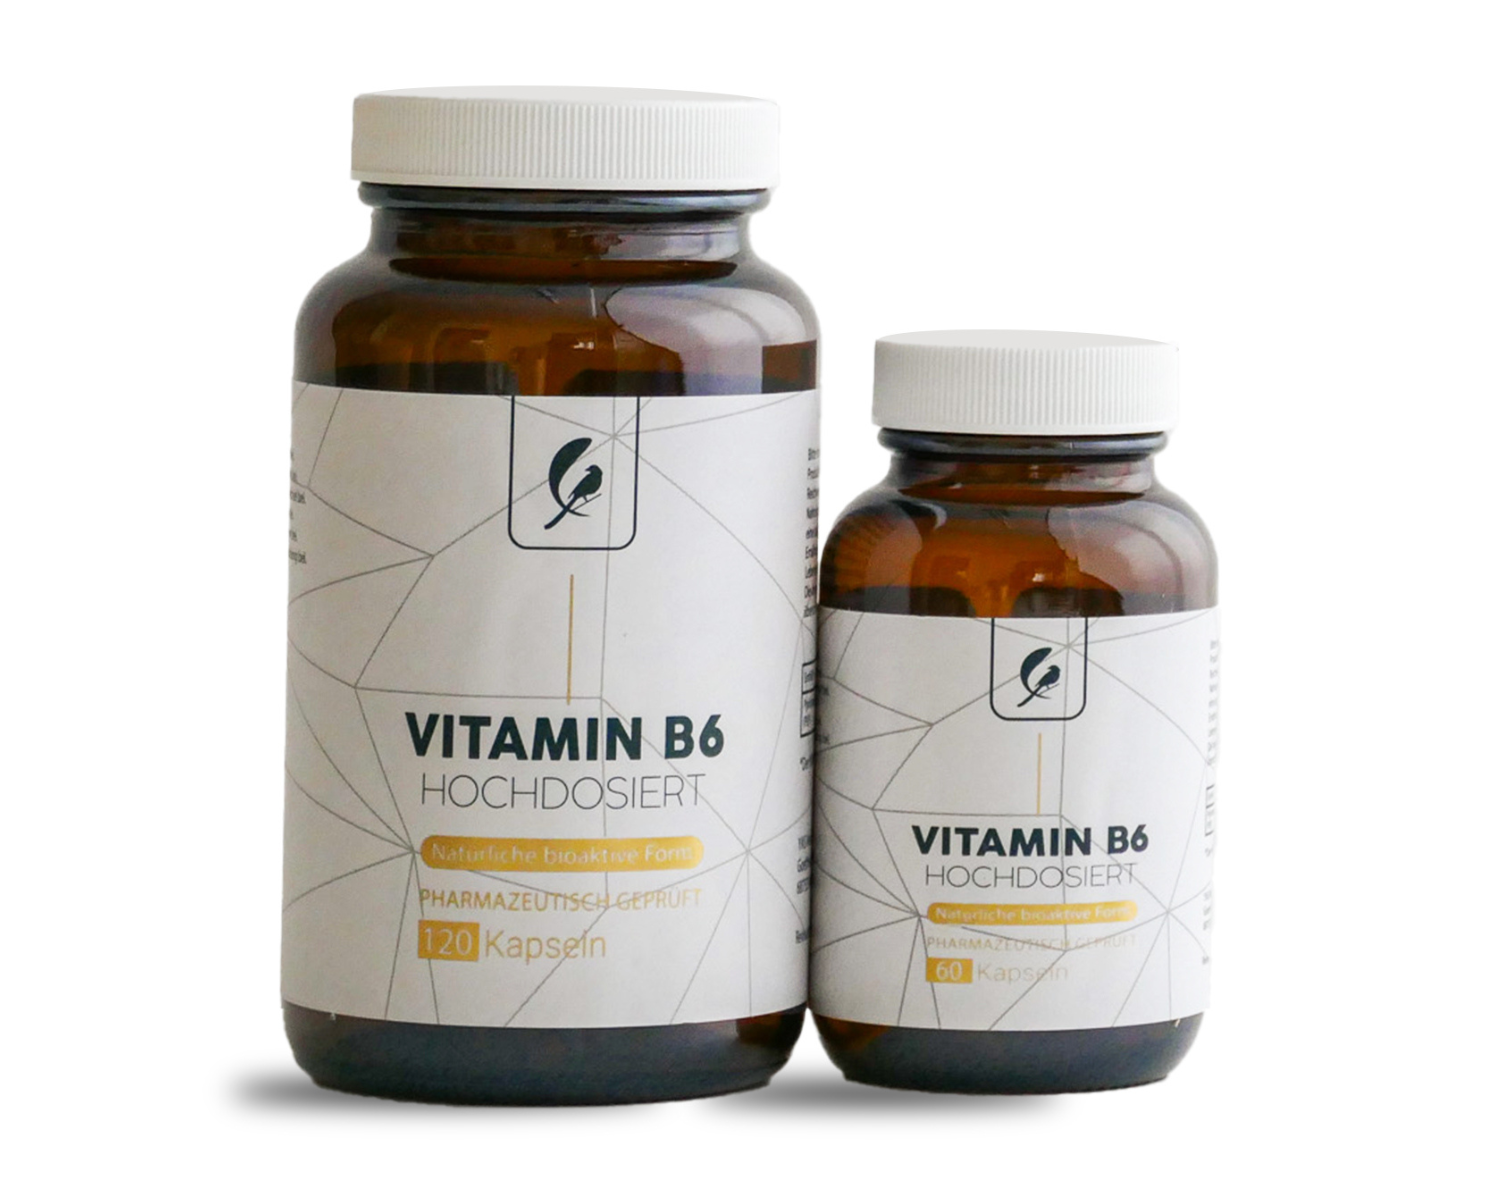 Vitamin B6 hochdosiert und bioaktiv in veganen Kapseln. vegane Nahrungsergänzungsmittel aus Reinsubstanzen, ohne Zusätze, ohne Rieselhilfen, laktose und Glutenfrei. Vitamin B6 Bioaktiv als  Pyridoxalphosphat (PLP), hochdosiert mit 25mg in jeder Kapsel. Vitamin B6 für das Immunsystem, Vitamin B6 für die Psyche, Vitamin B6 für gesunde Nerven, Vitamin B6 für die Bildung von Neurotransmitter und zur Förderung der psychischen Gesundheit